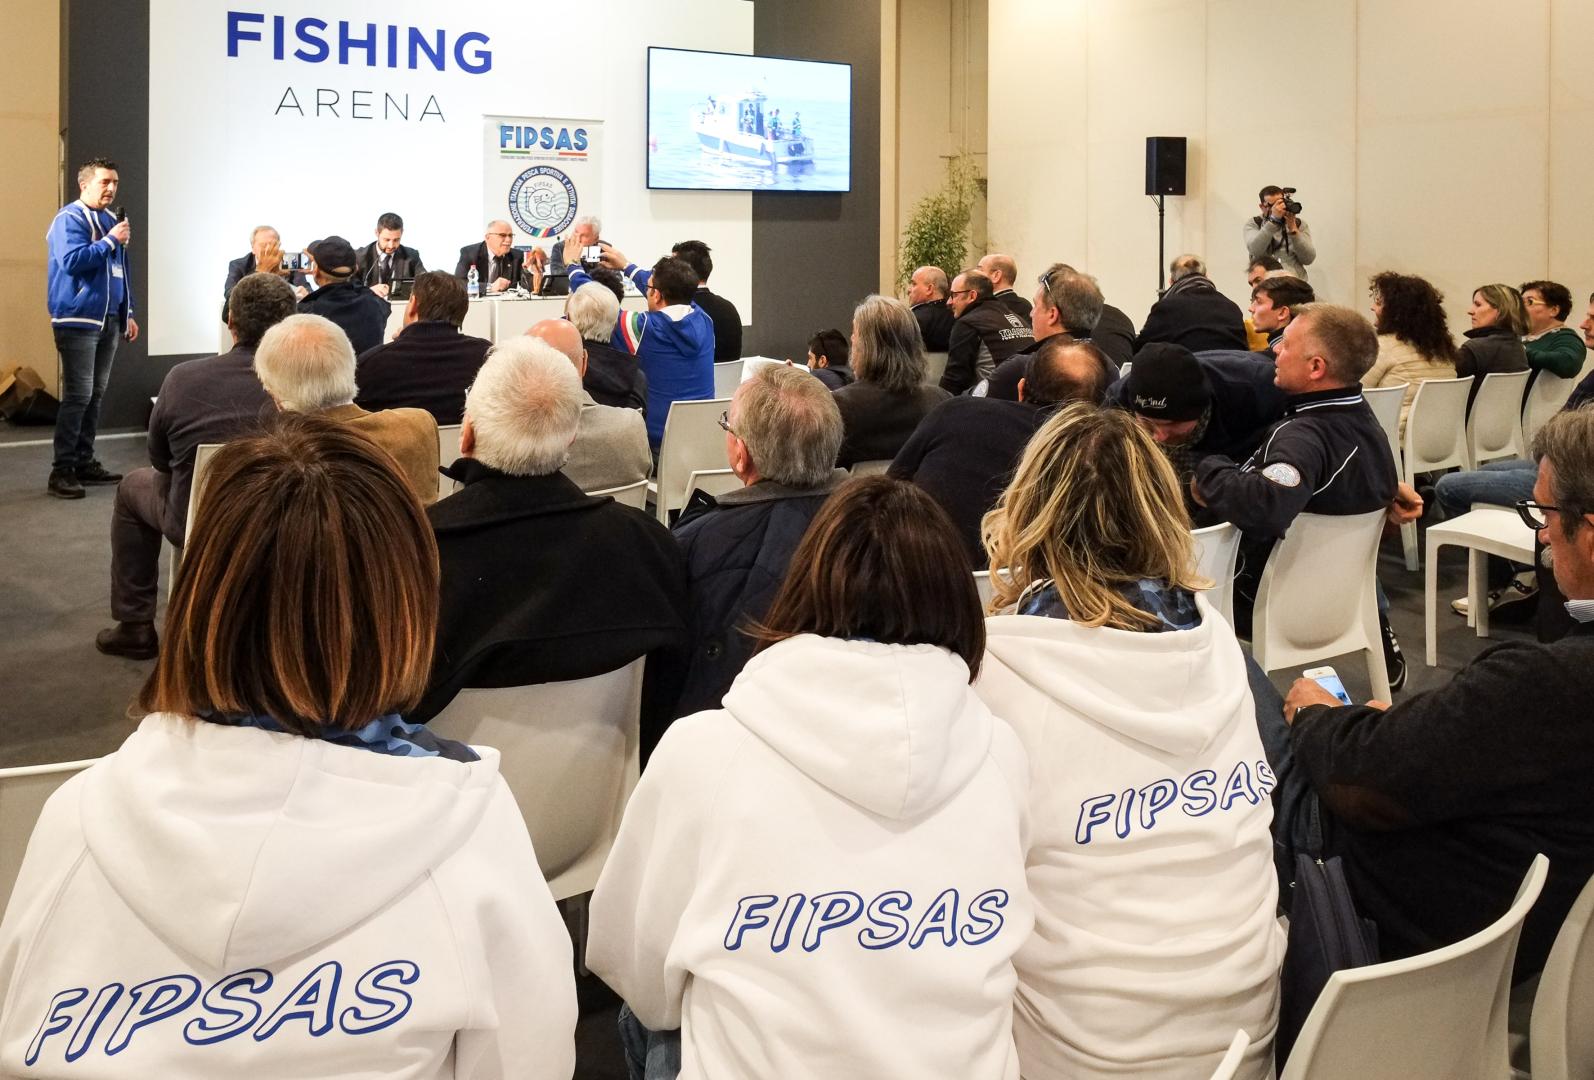 Presentati a Pescare Show i Campionati Internazionali di pesca sportiva che si terranno in Italia nel 2019